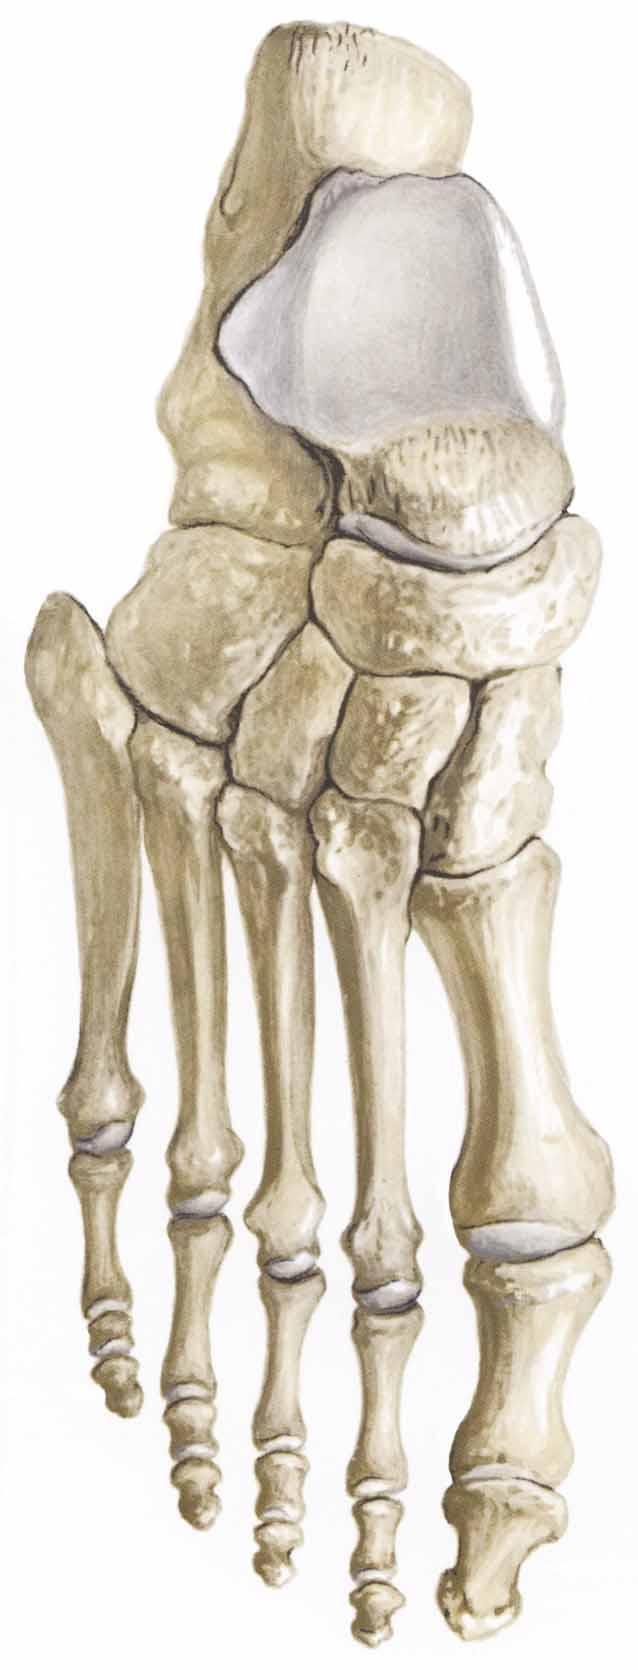 the toes Phalanges Toe bones Three per toe, except the big